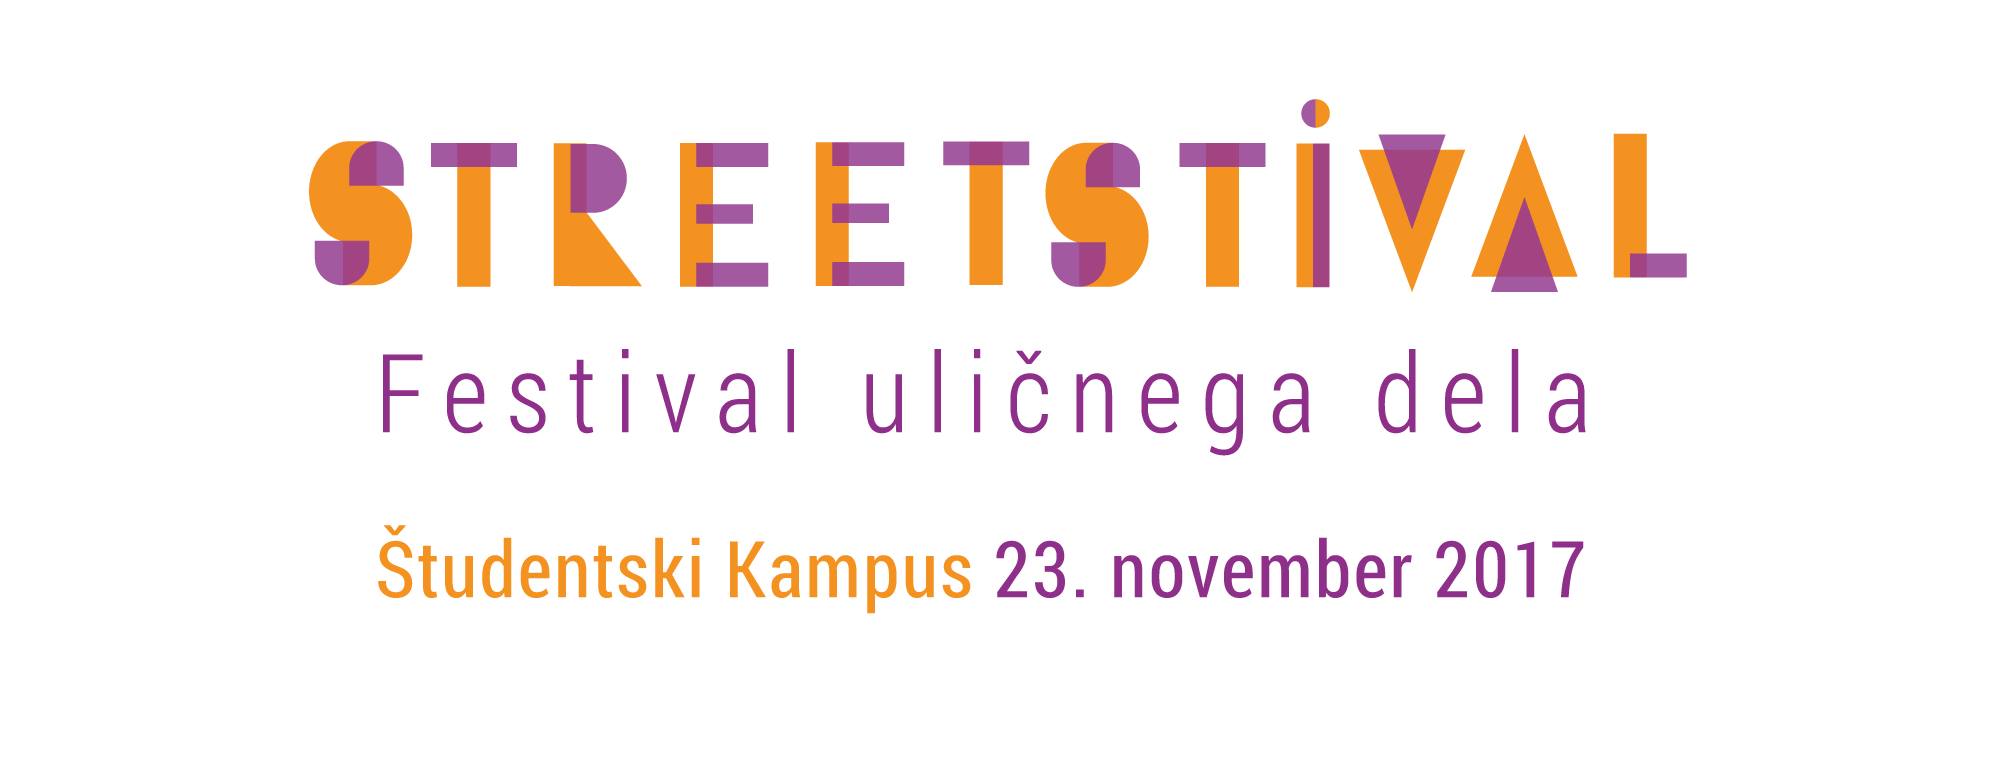 Streetstival – festival uličnega dela 23.11.2017. Študentski kampus